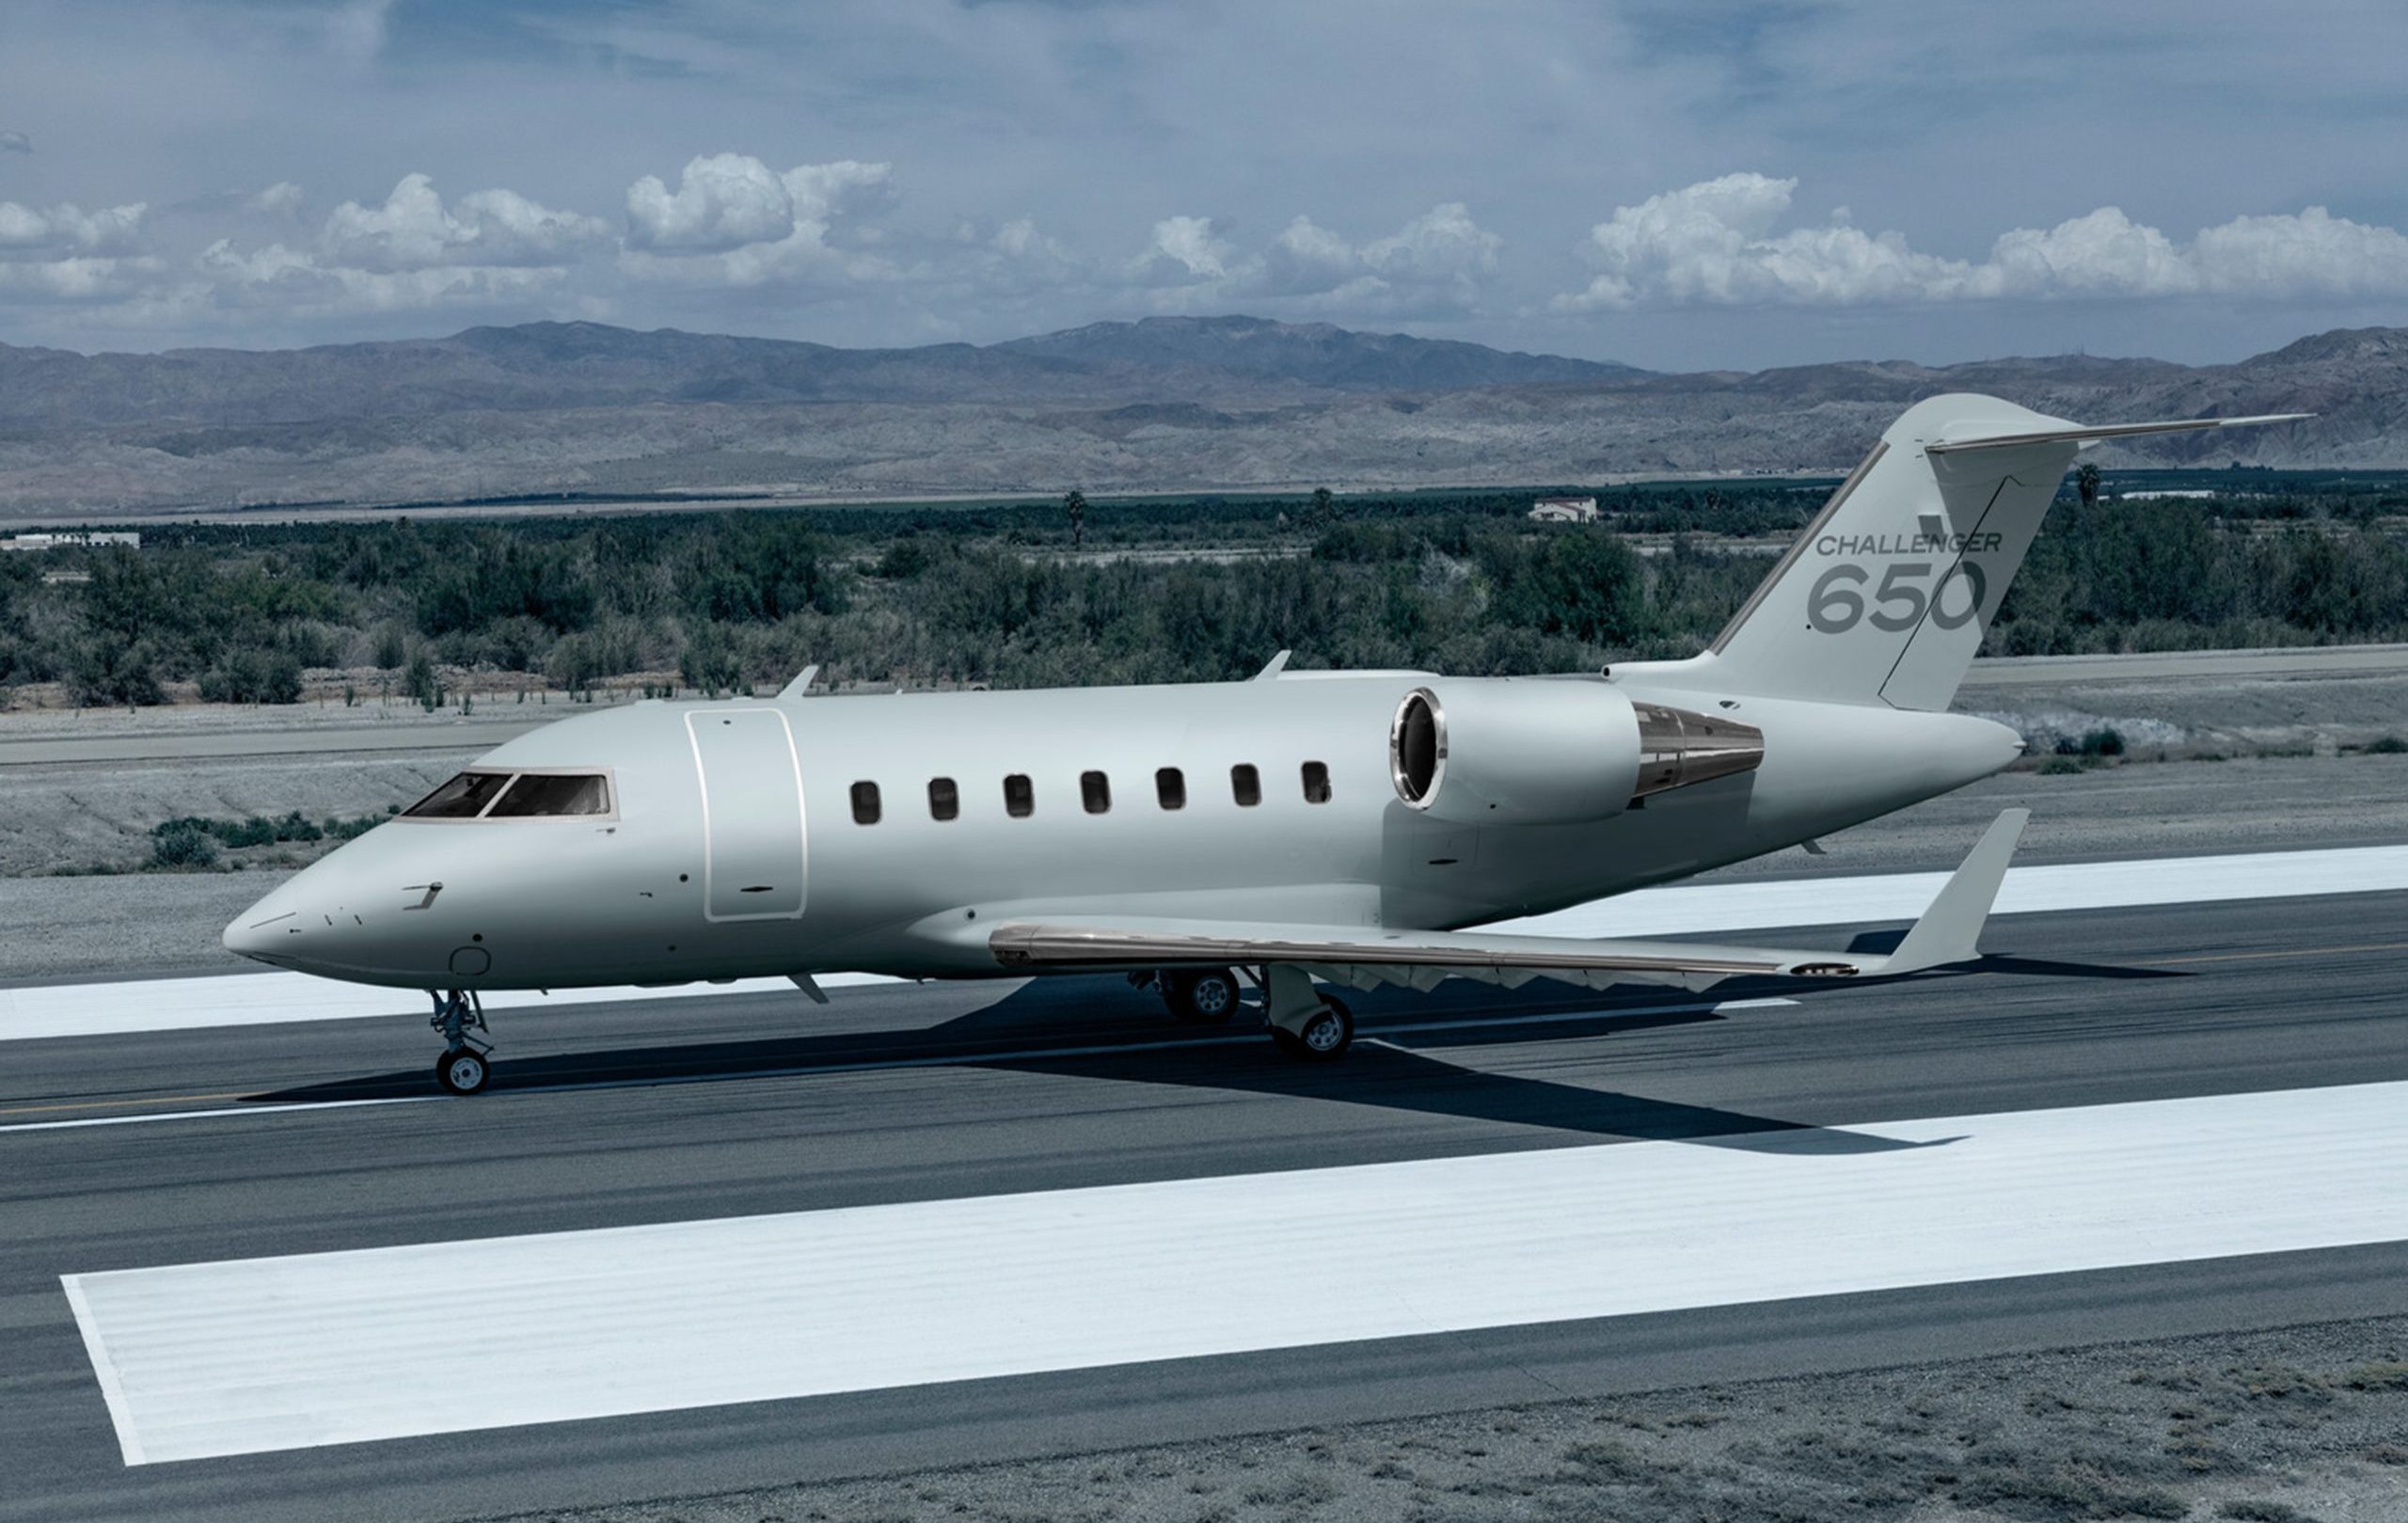  بومباردييه تشالنجر 650: قوة هائلة في مجال الطيران العسكري Challenger-650-on-runway-scaled-e1701002371887